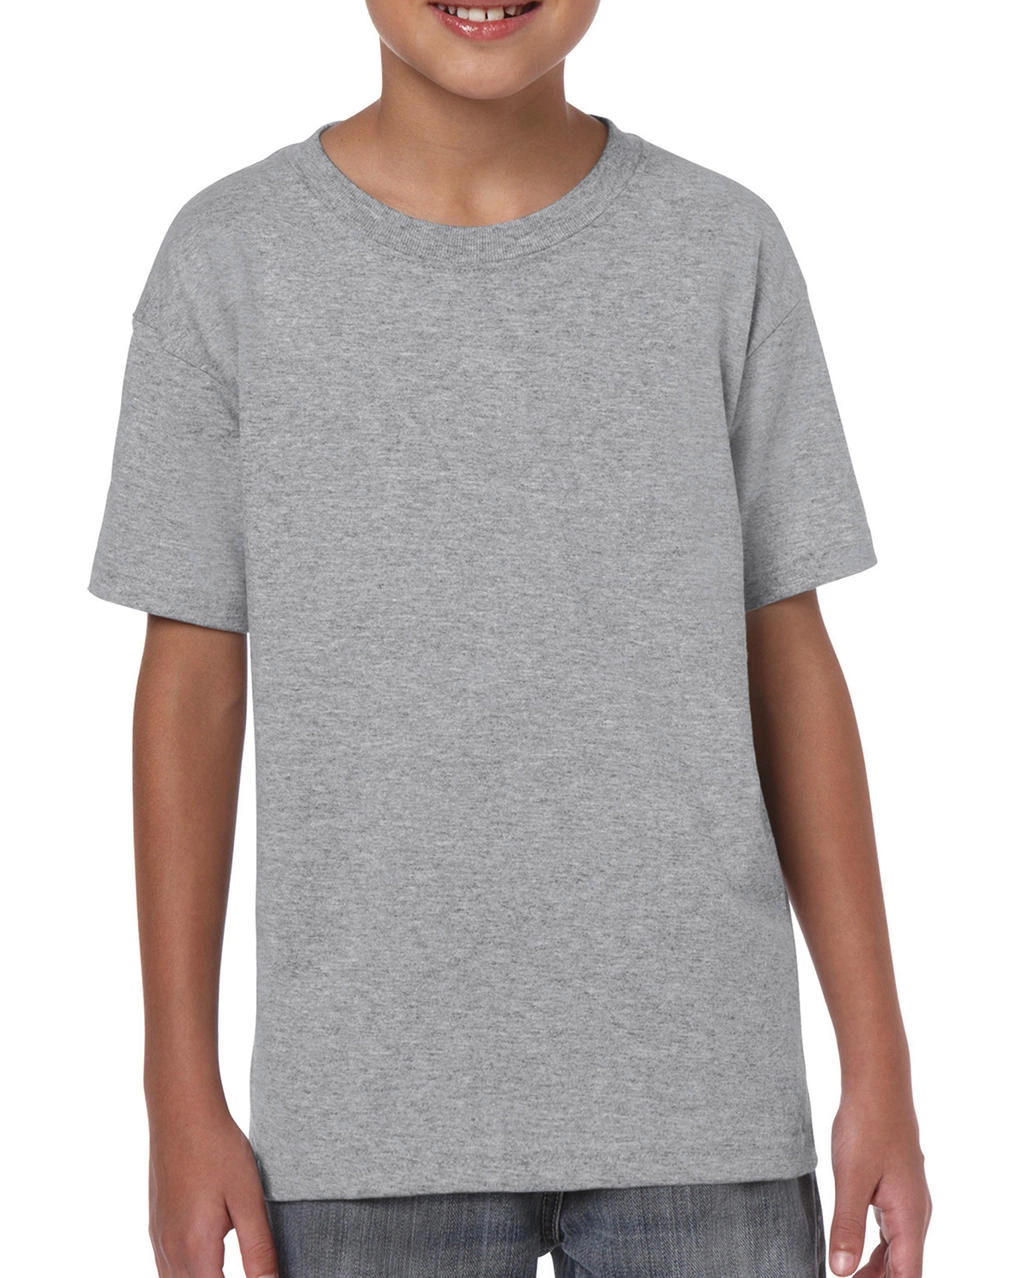 Heavy Cotton Youth T-Shirt zum Besticken und Bedrucken in der Farbe Sport Grey mit Ihren Logo, Schriftzug oder Motiv.